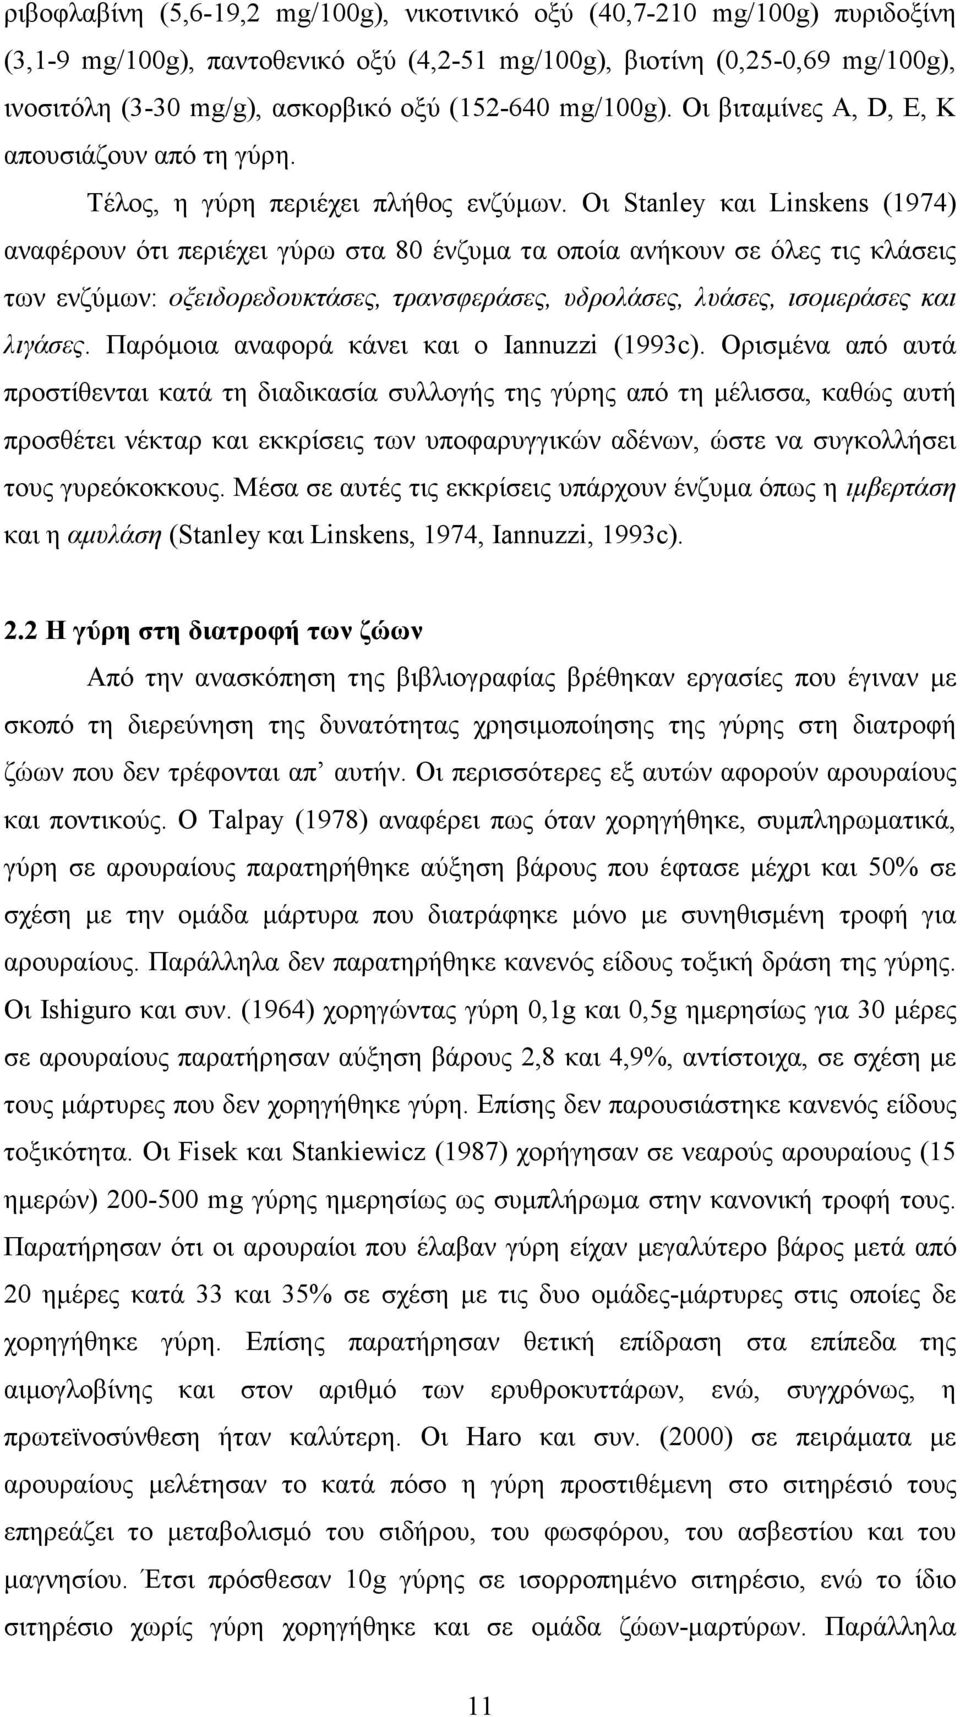 Οι Stanley και Linskens (1974) αναφέρουν ότι περιέχει γύρω στα 80 ένζυµα τα οποία ανήκουν σε όλες τις κλάσεις των ενζύµων: οξειδορεδουκτάσες, τρανσφεράσες, υδρολάσες, λυάσες, ισοµεράσες και λιγάσες.